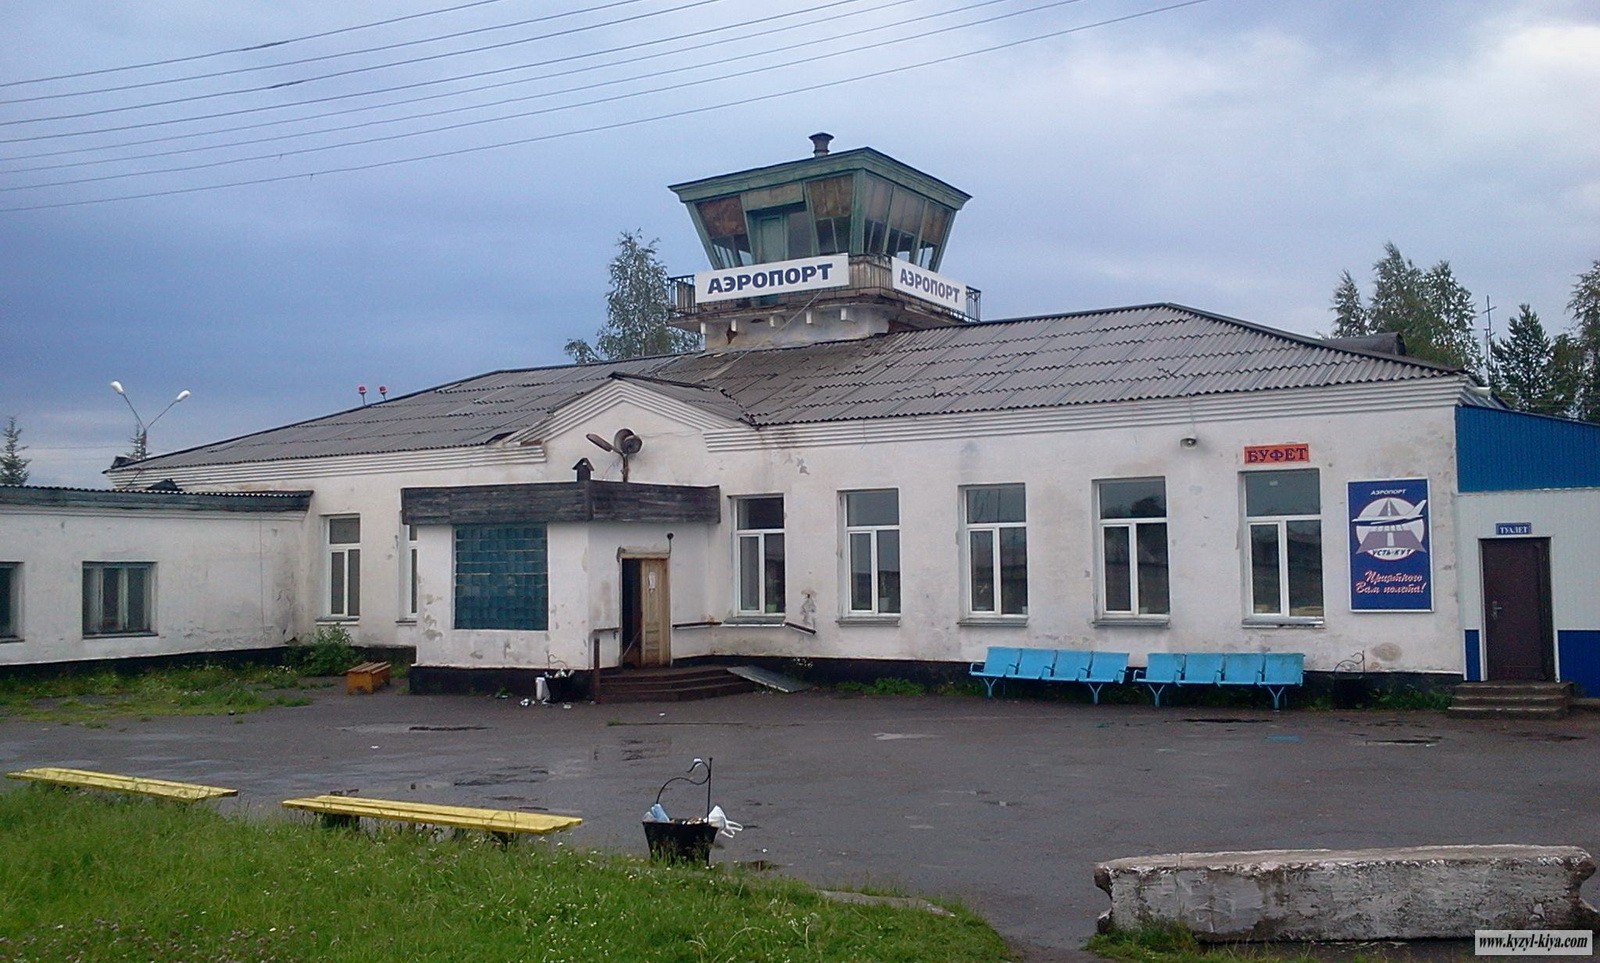 Аэропорт Усть-Кут